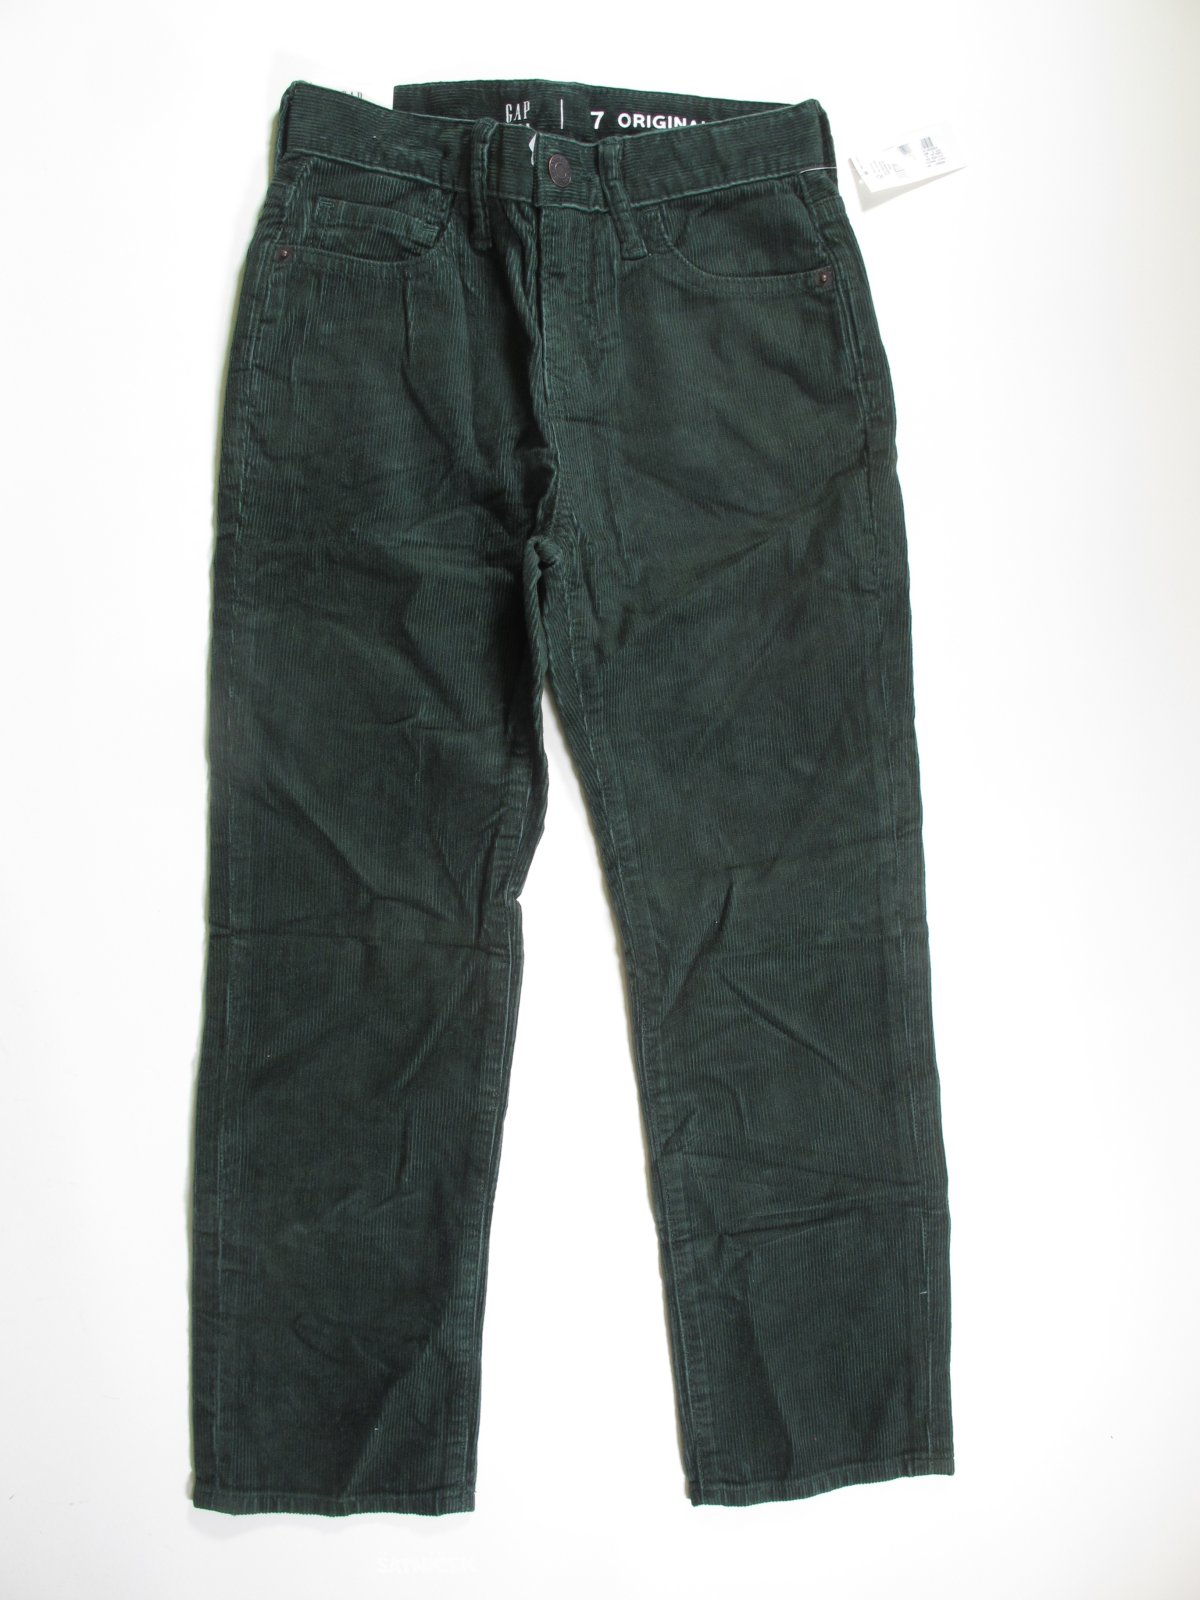 Manžestrové kalhoty pro kluky zelené outlet 